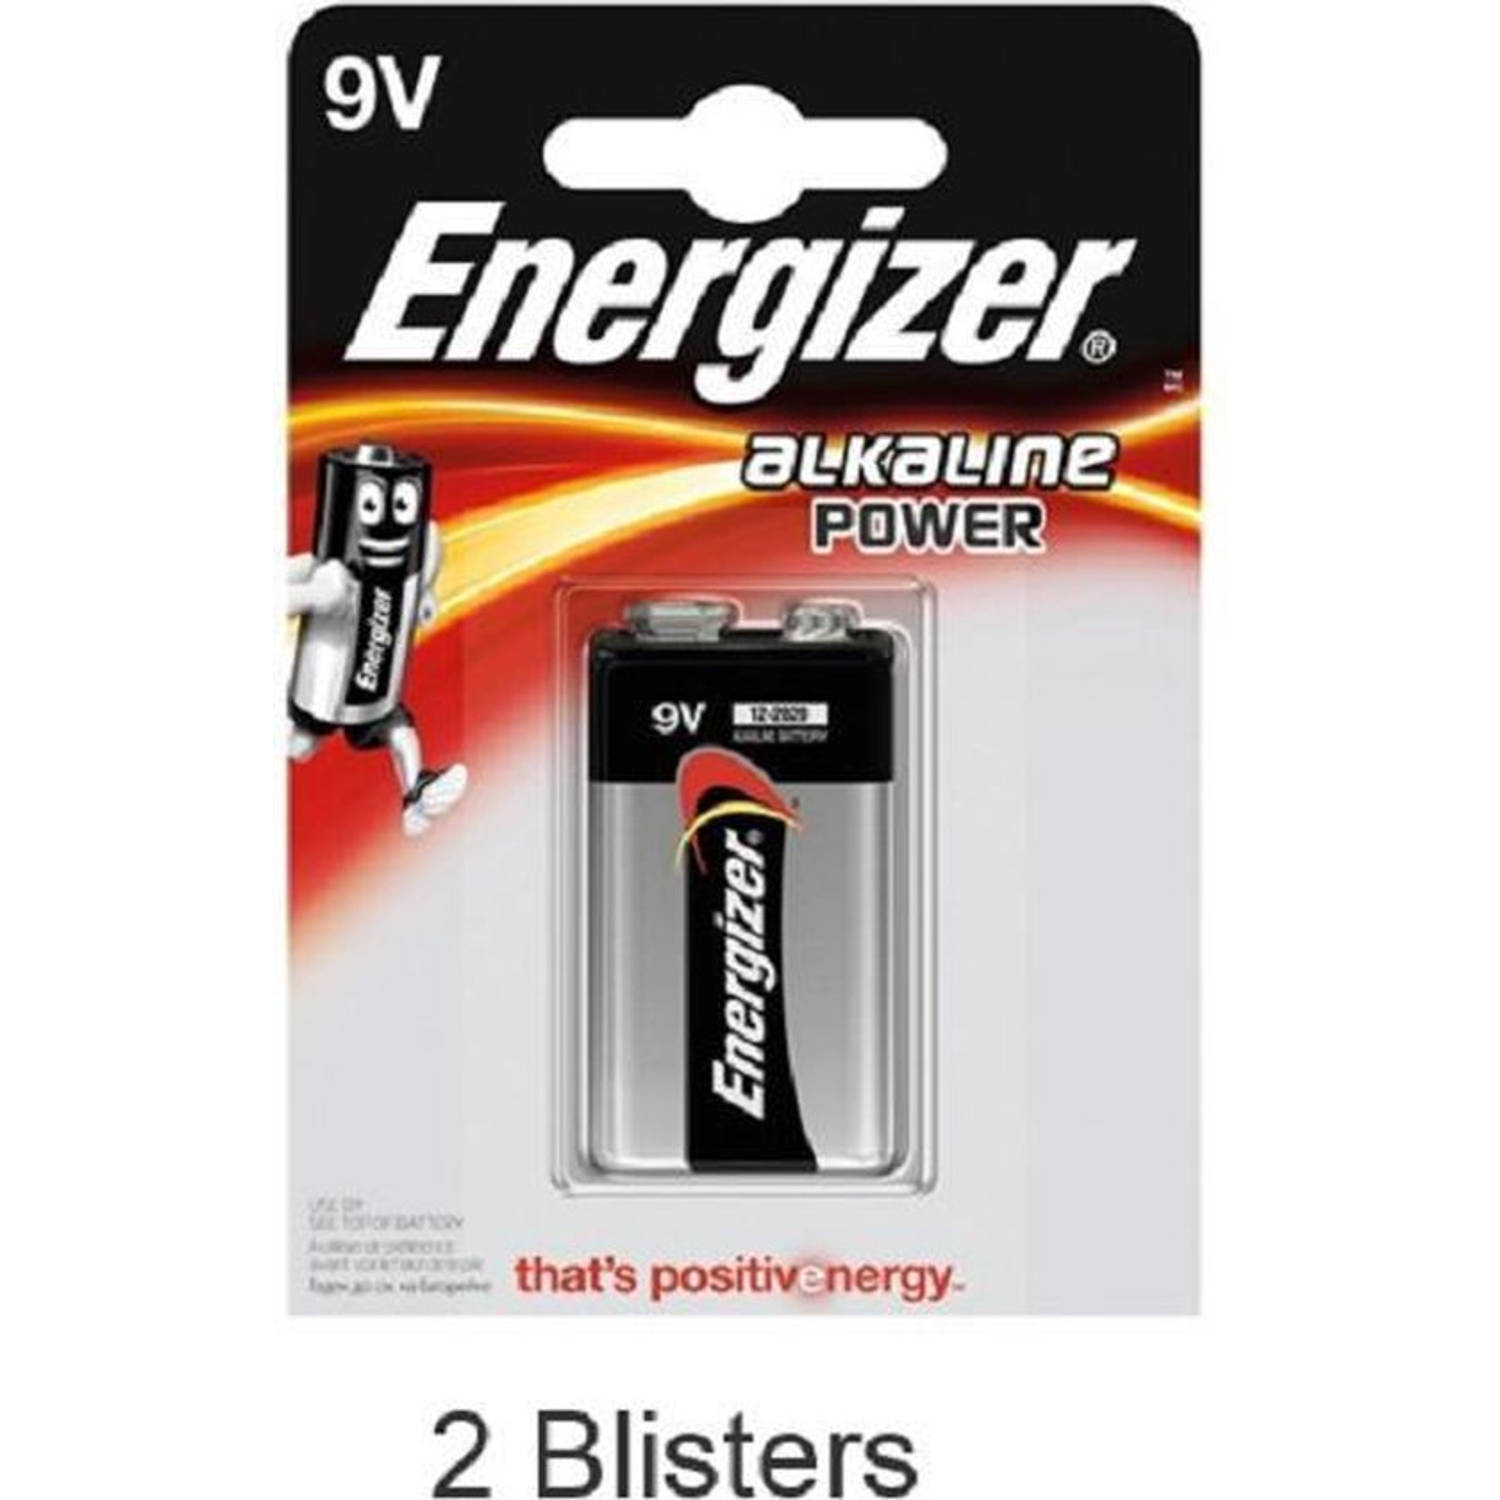 2 Stuks (2 Blisters A 1 Stuk) Energizer Alkaline Power 9v Blok Batterij